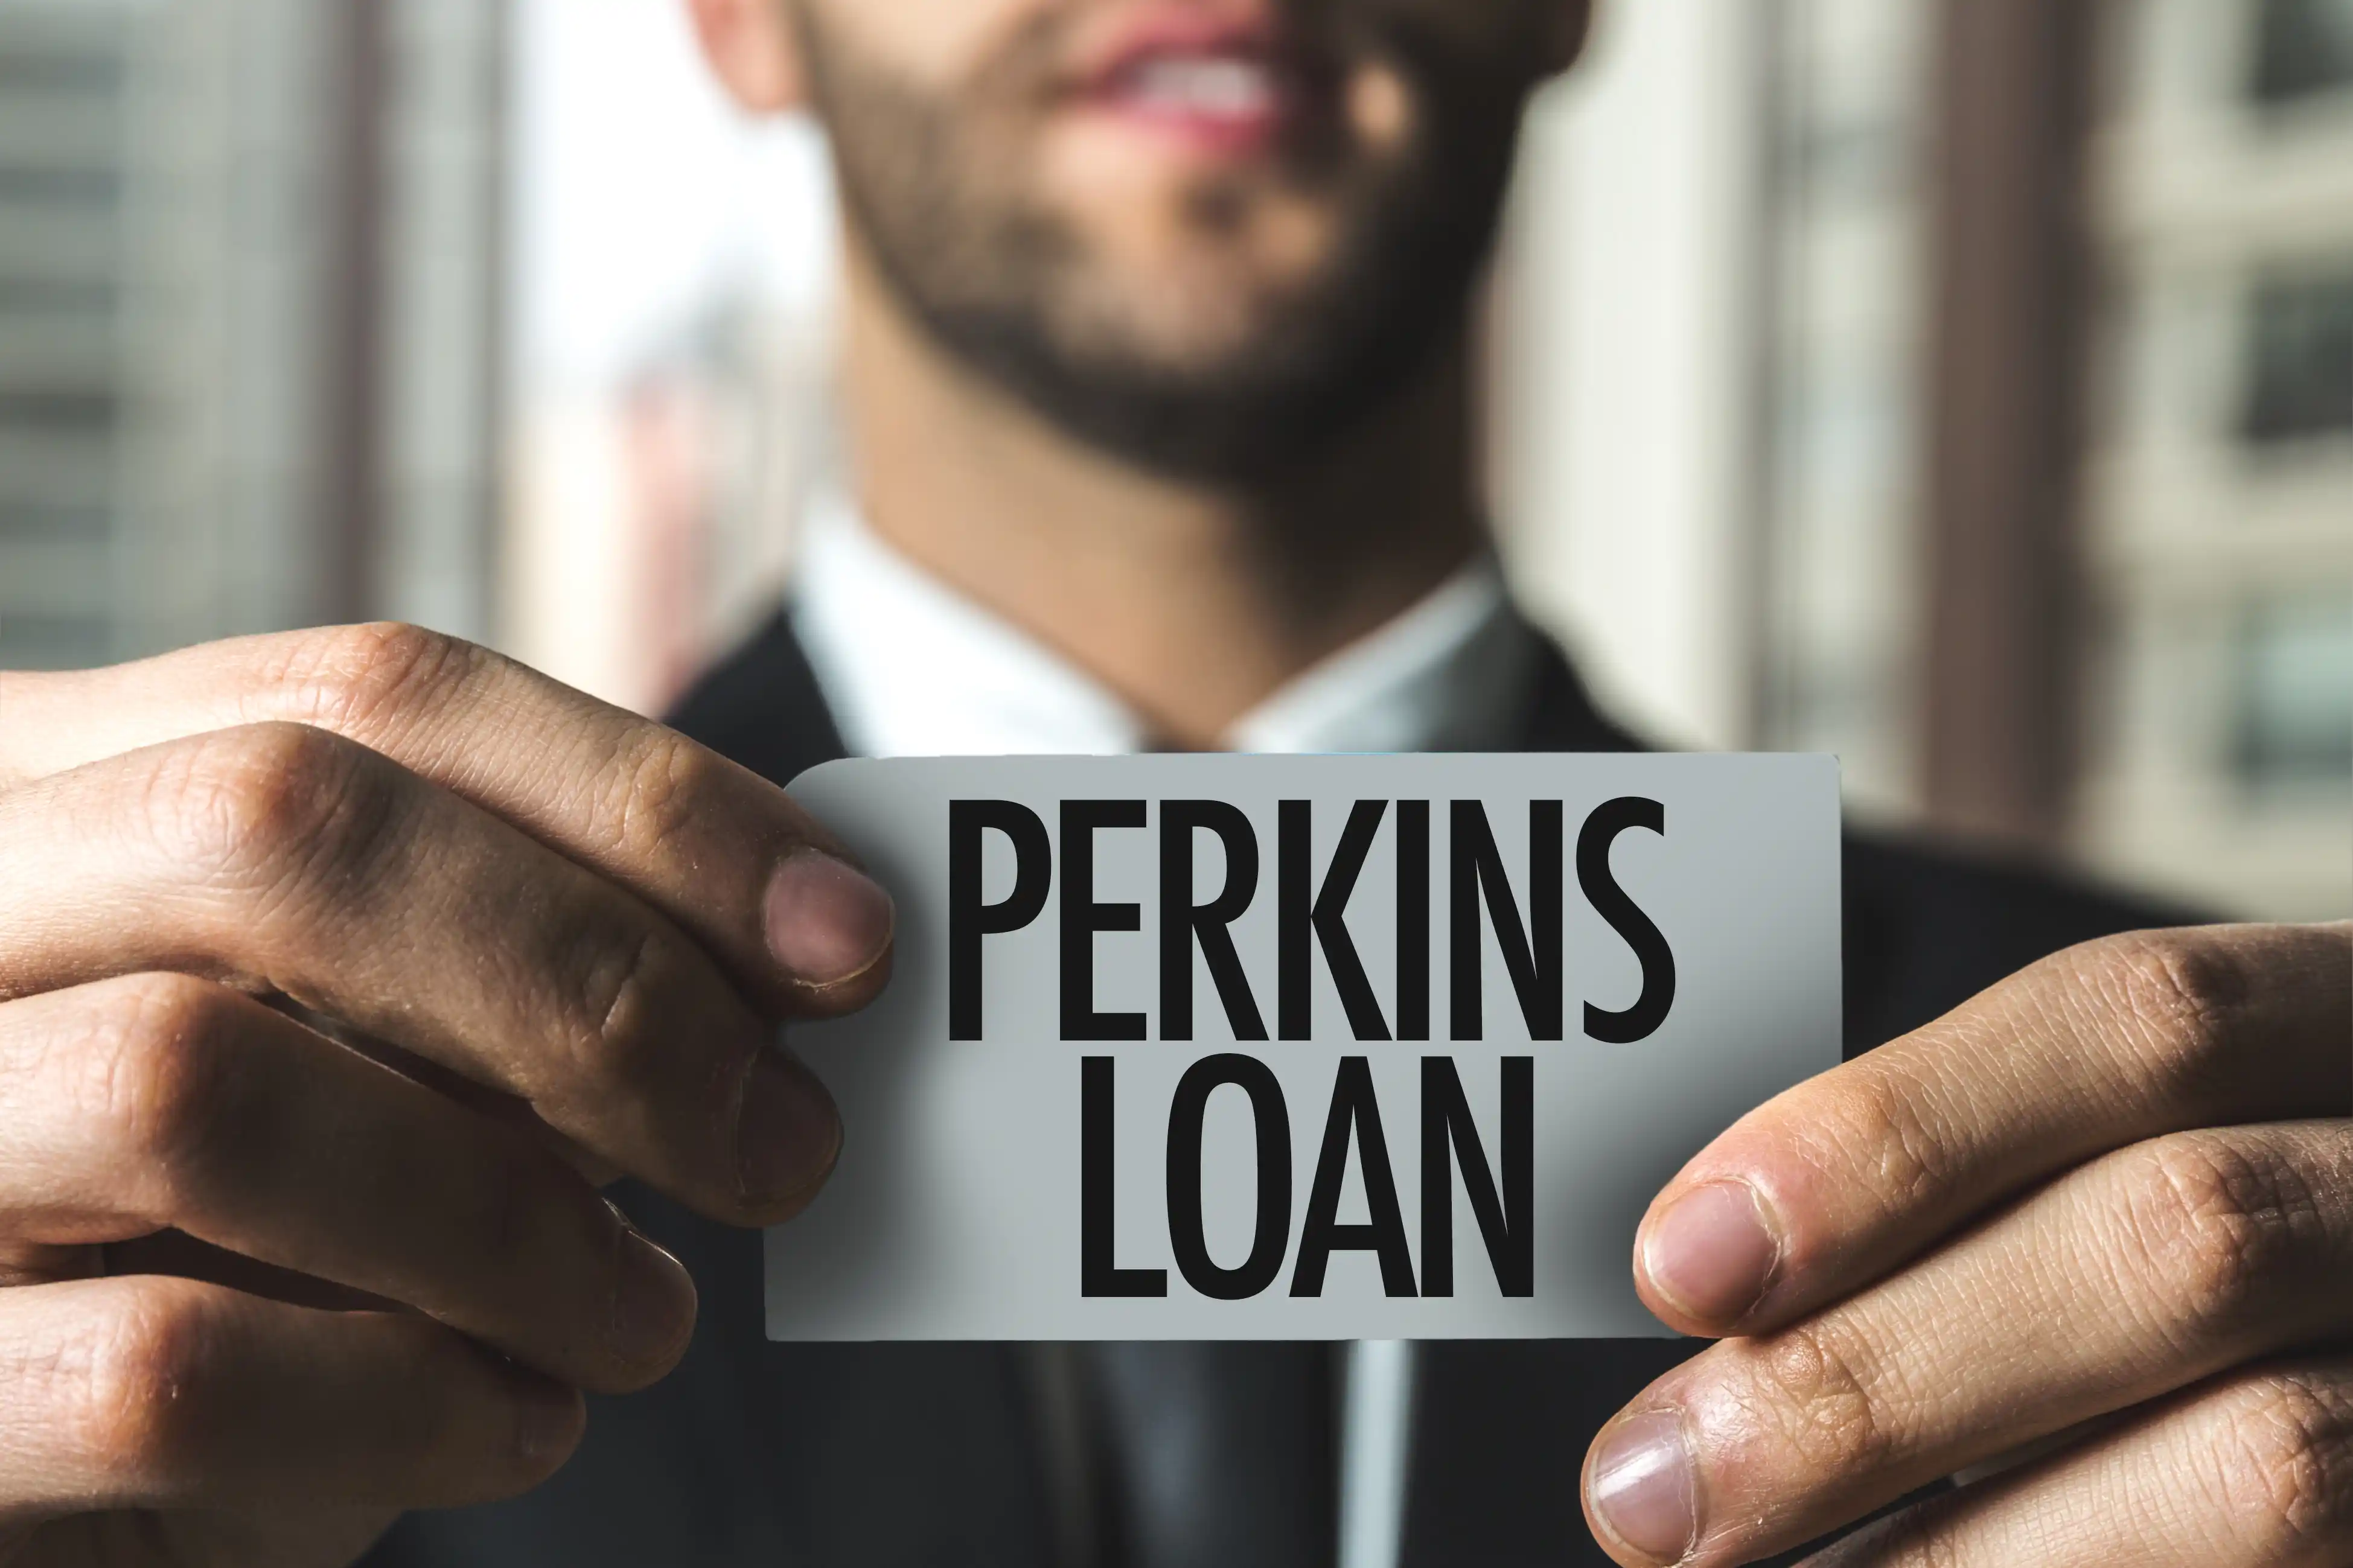 Perkins loans